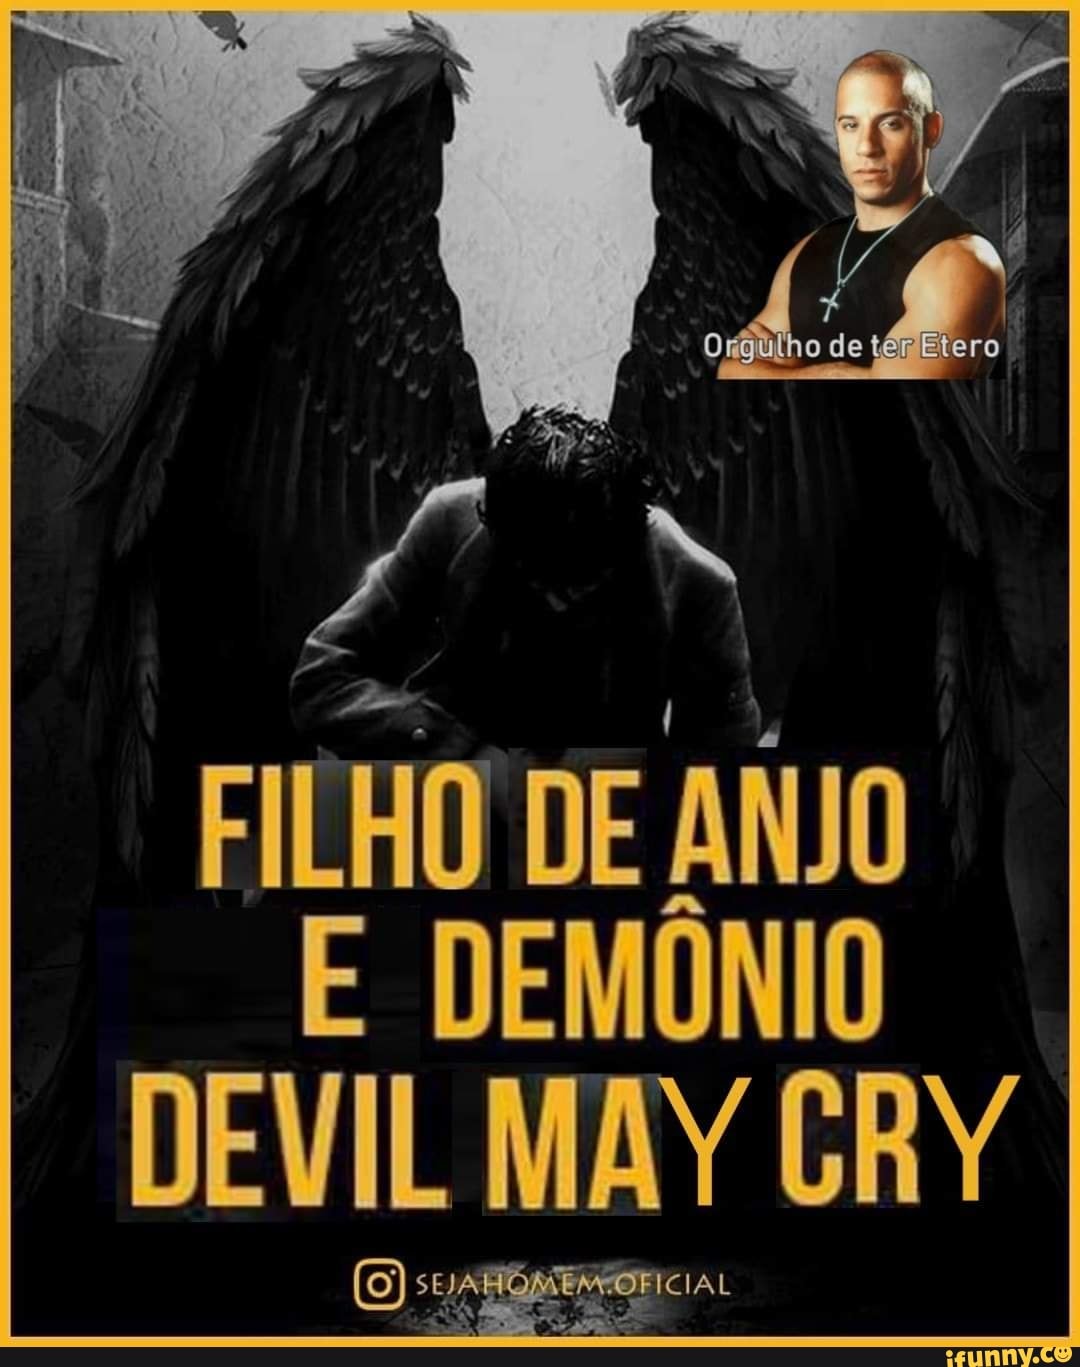 ANIME BRASILEIRO sobre Anjos e Demônios Lançado em 2020 CONFIRA! 